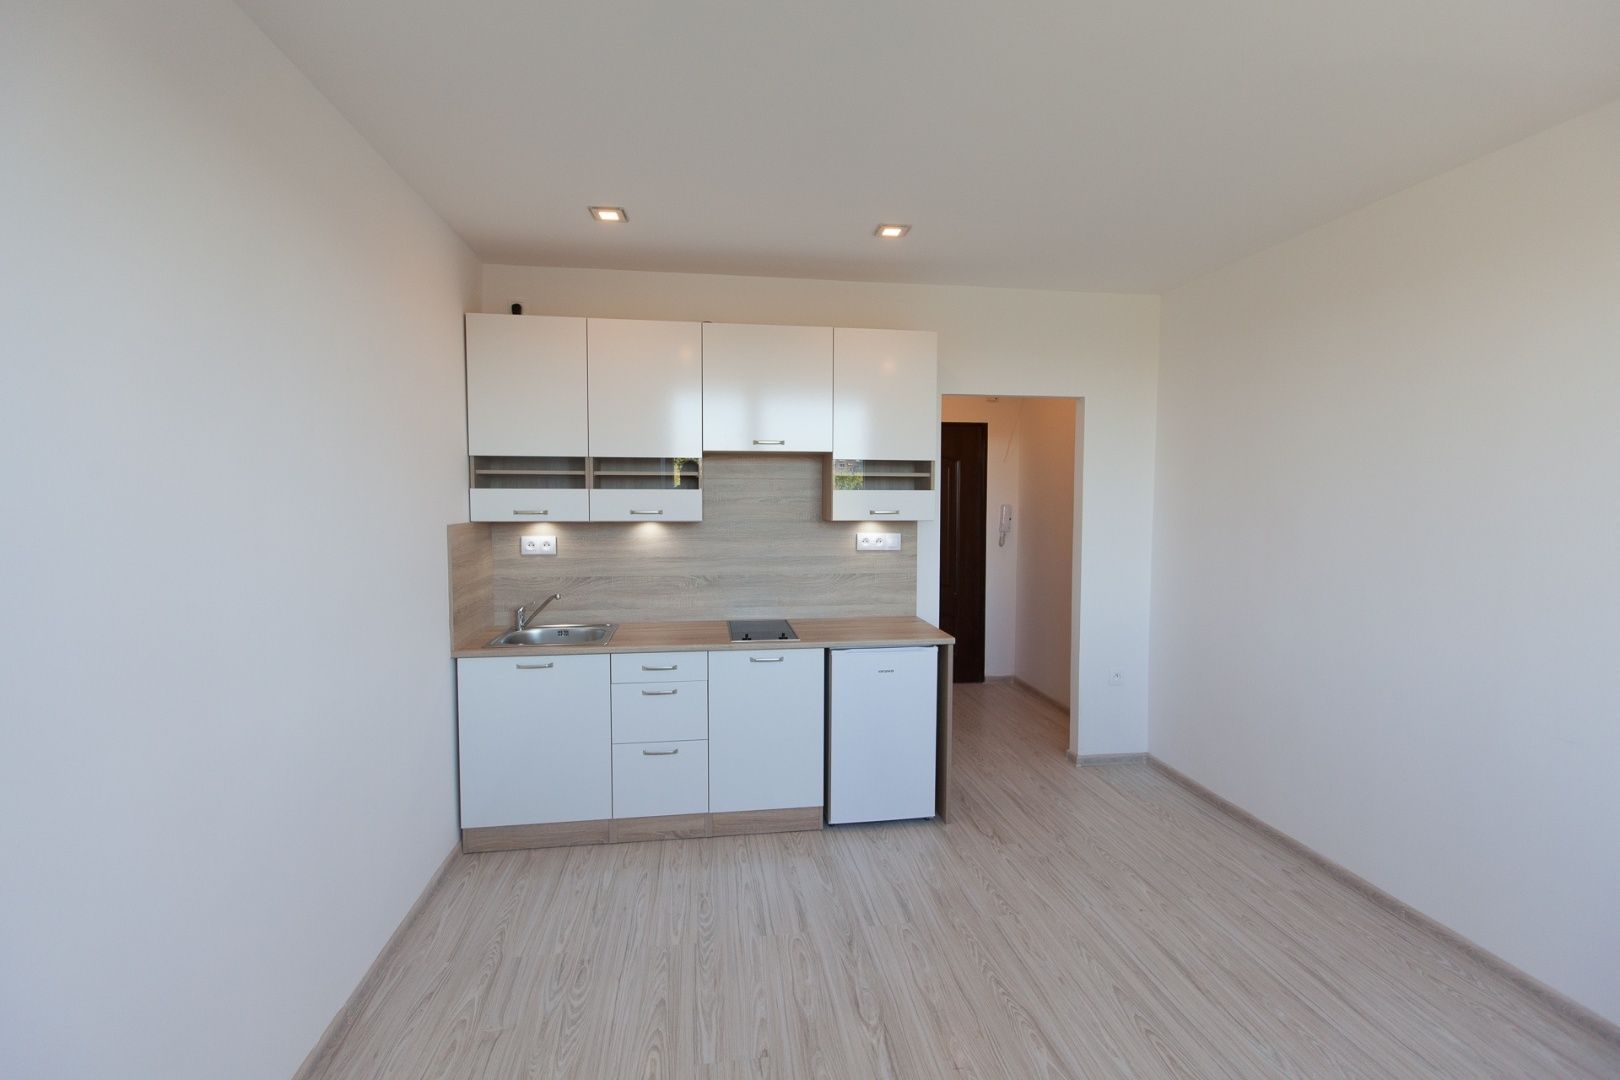 REZERVOVANÉ - Predáme krásne rekonštruovaný byt-garzónku 22m2 na 3.posch.